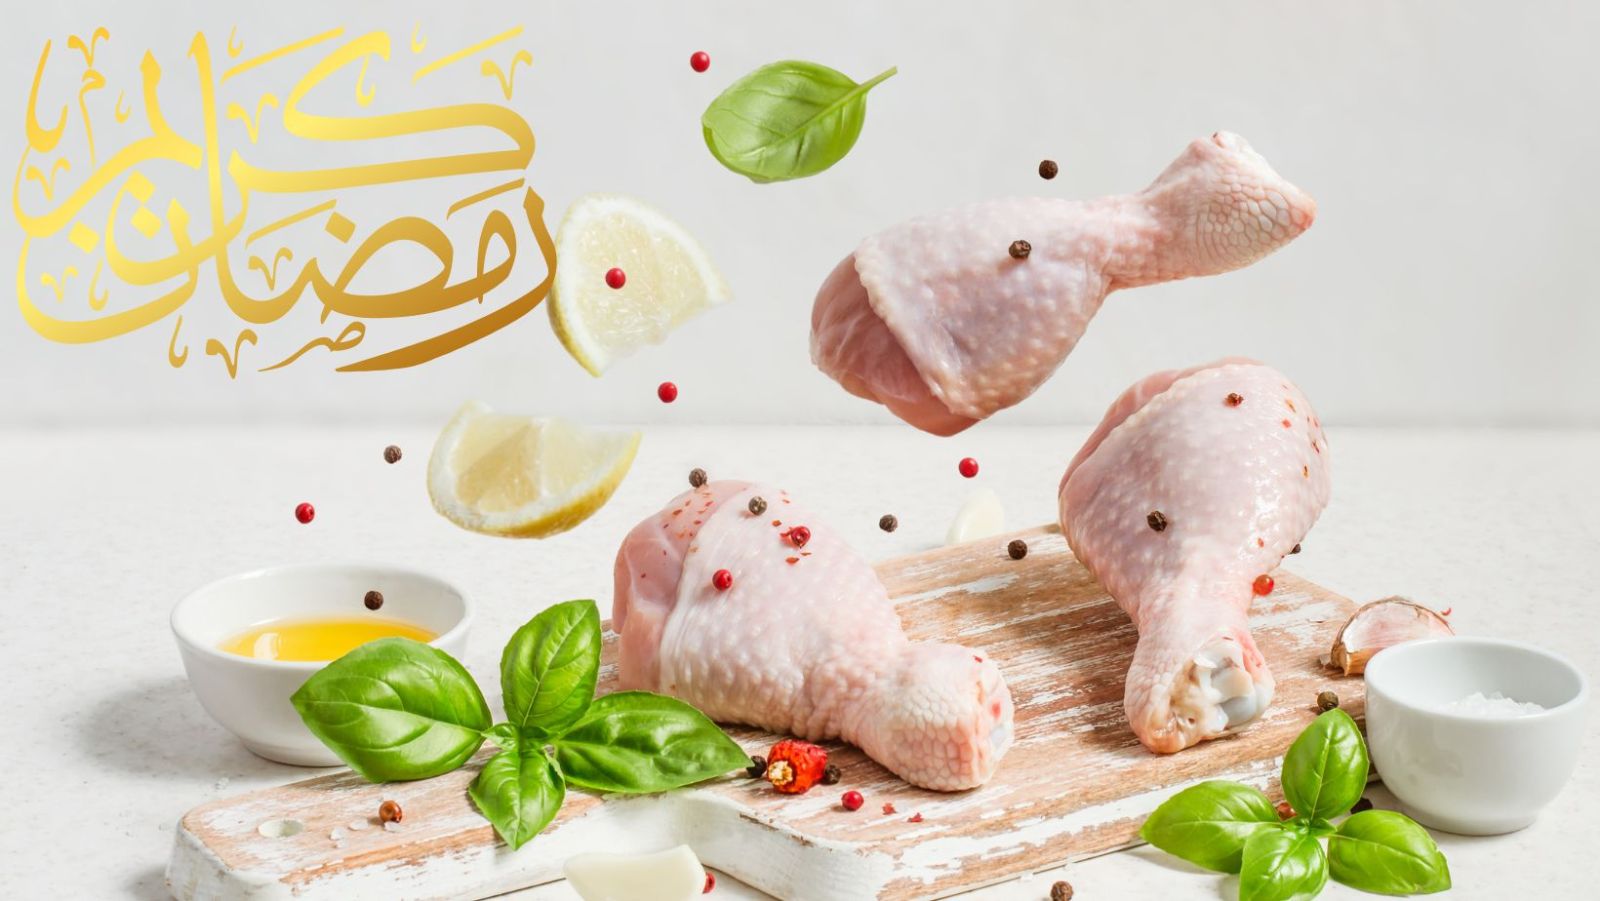 Poulet au citron confit et olives : une recette savoureuse et symbolique pour célébrer l'Aïd-el-Fitr